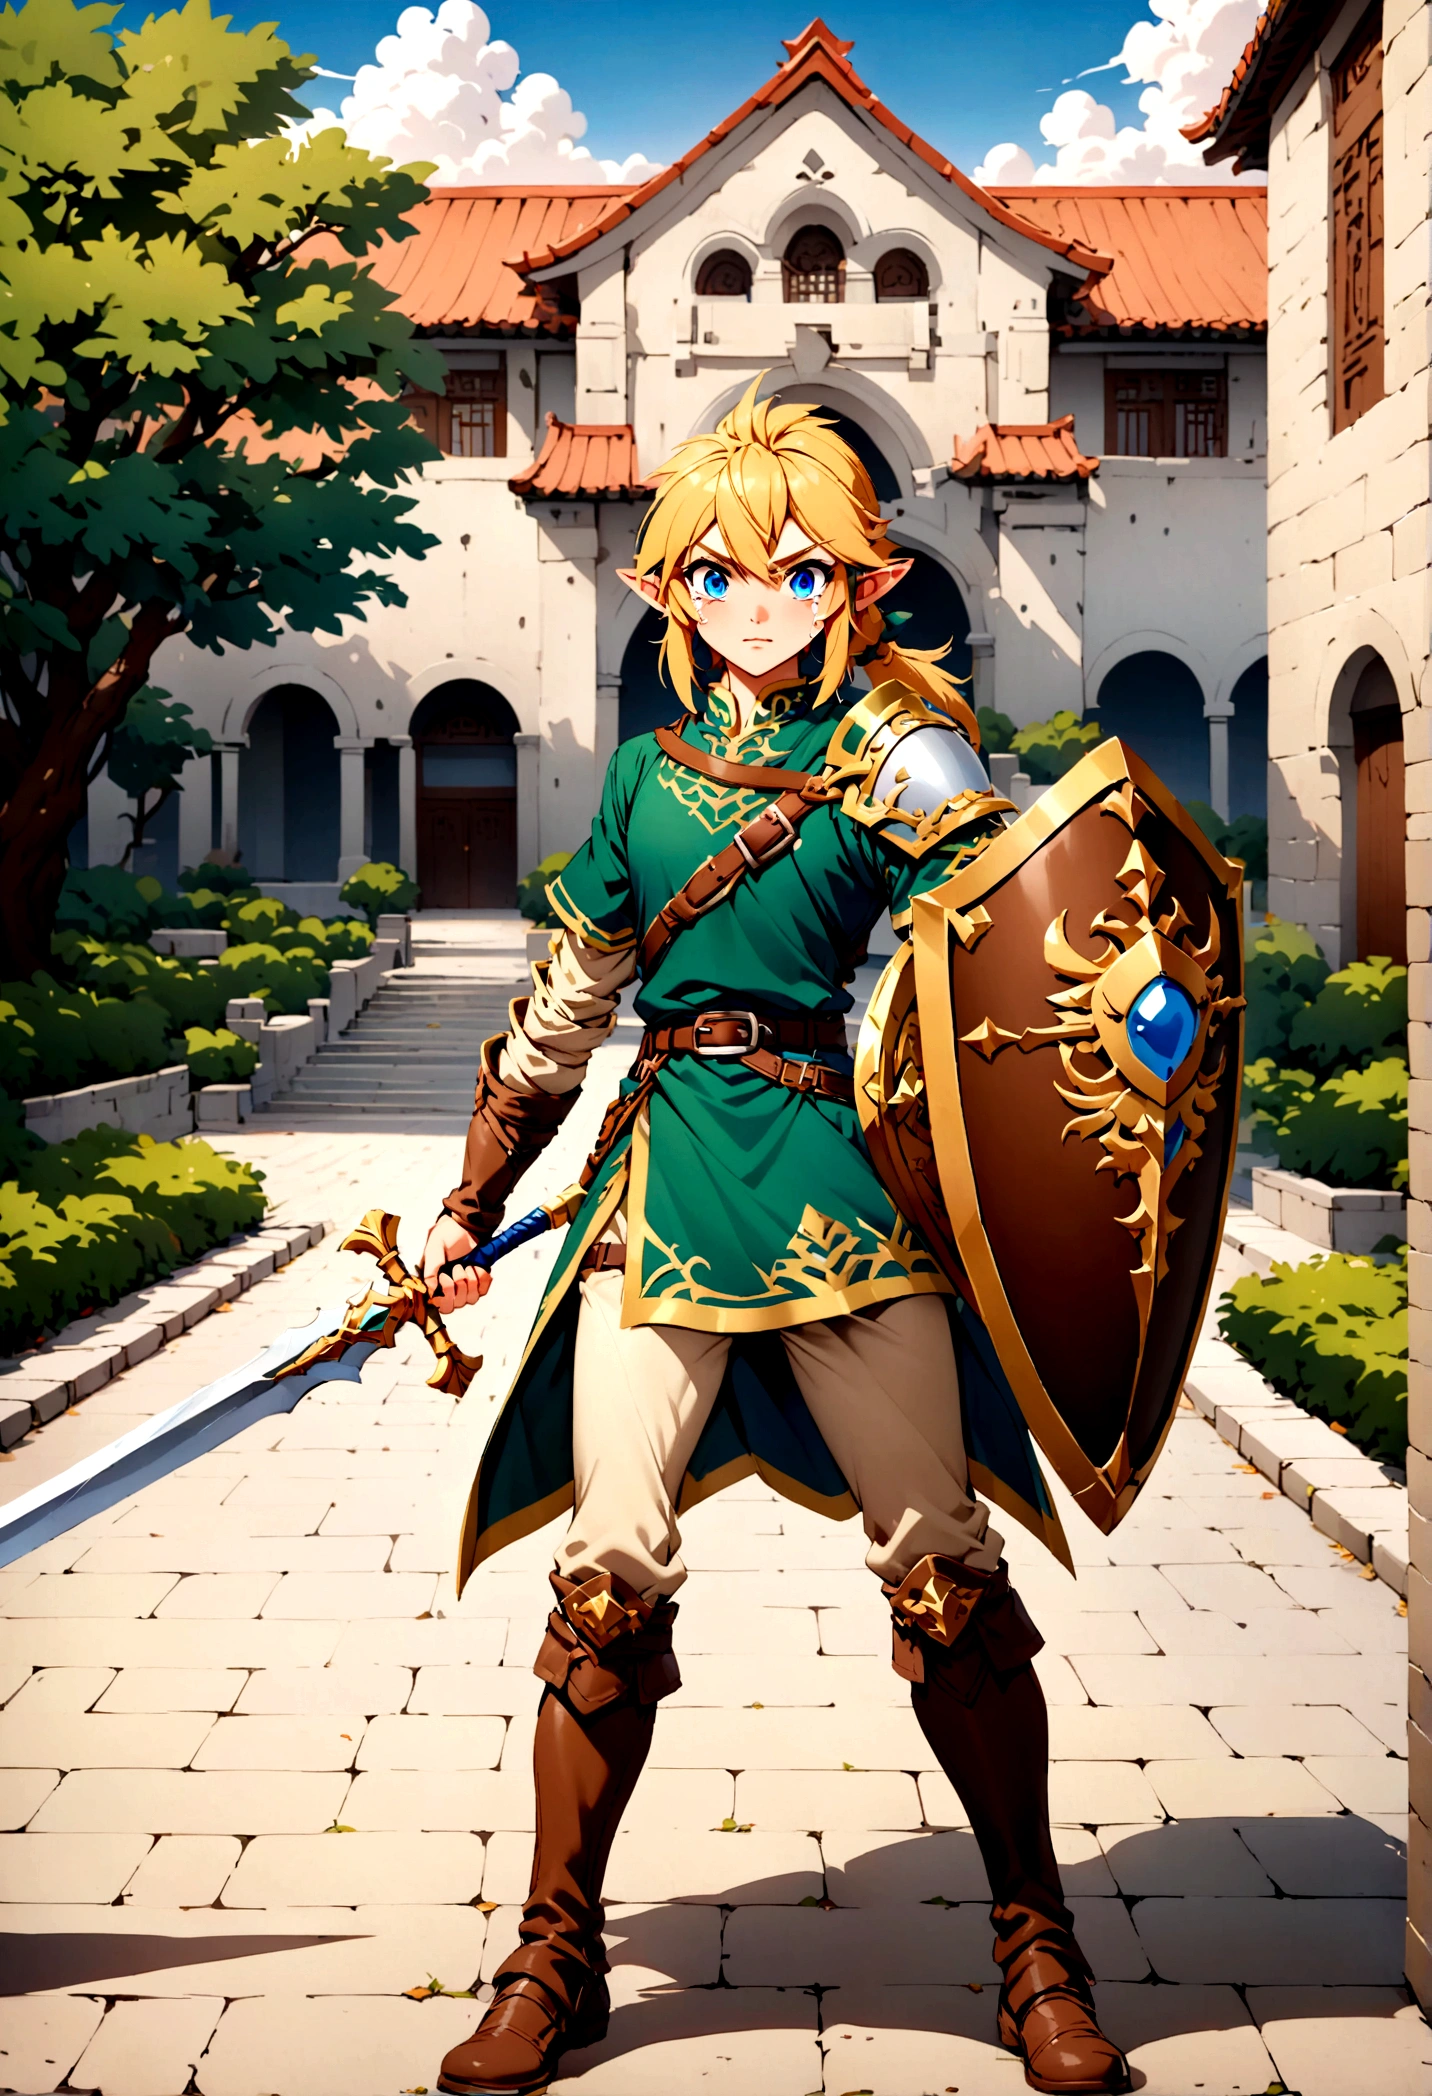 Link de Zelda lágrimas del Reino sosteniendo su espada y escudo, de pie en un campus universitario chino